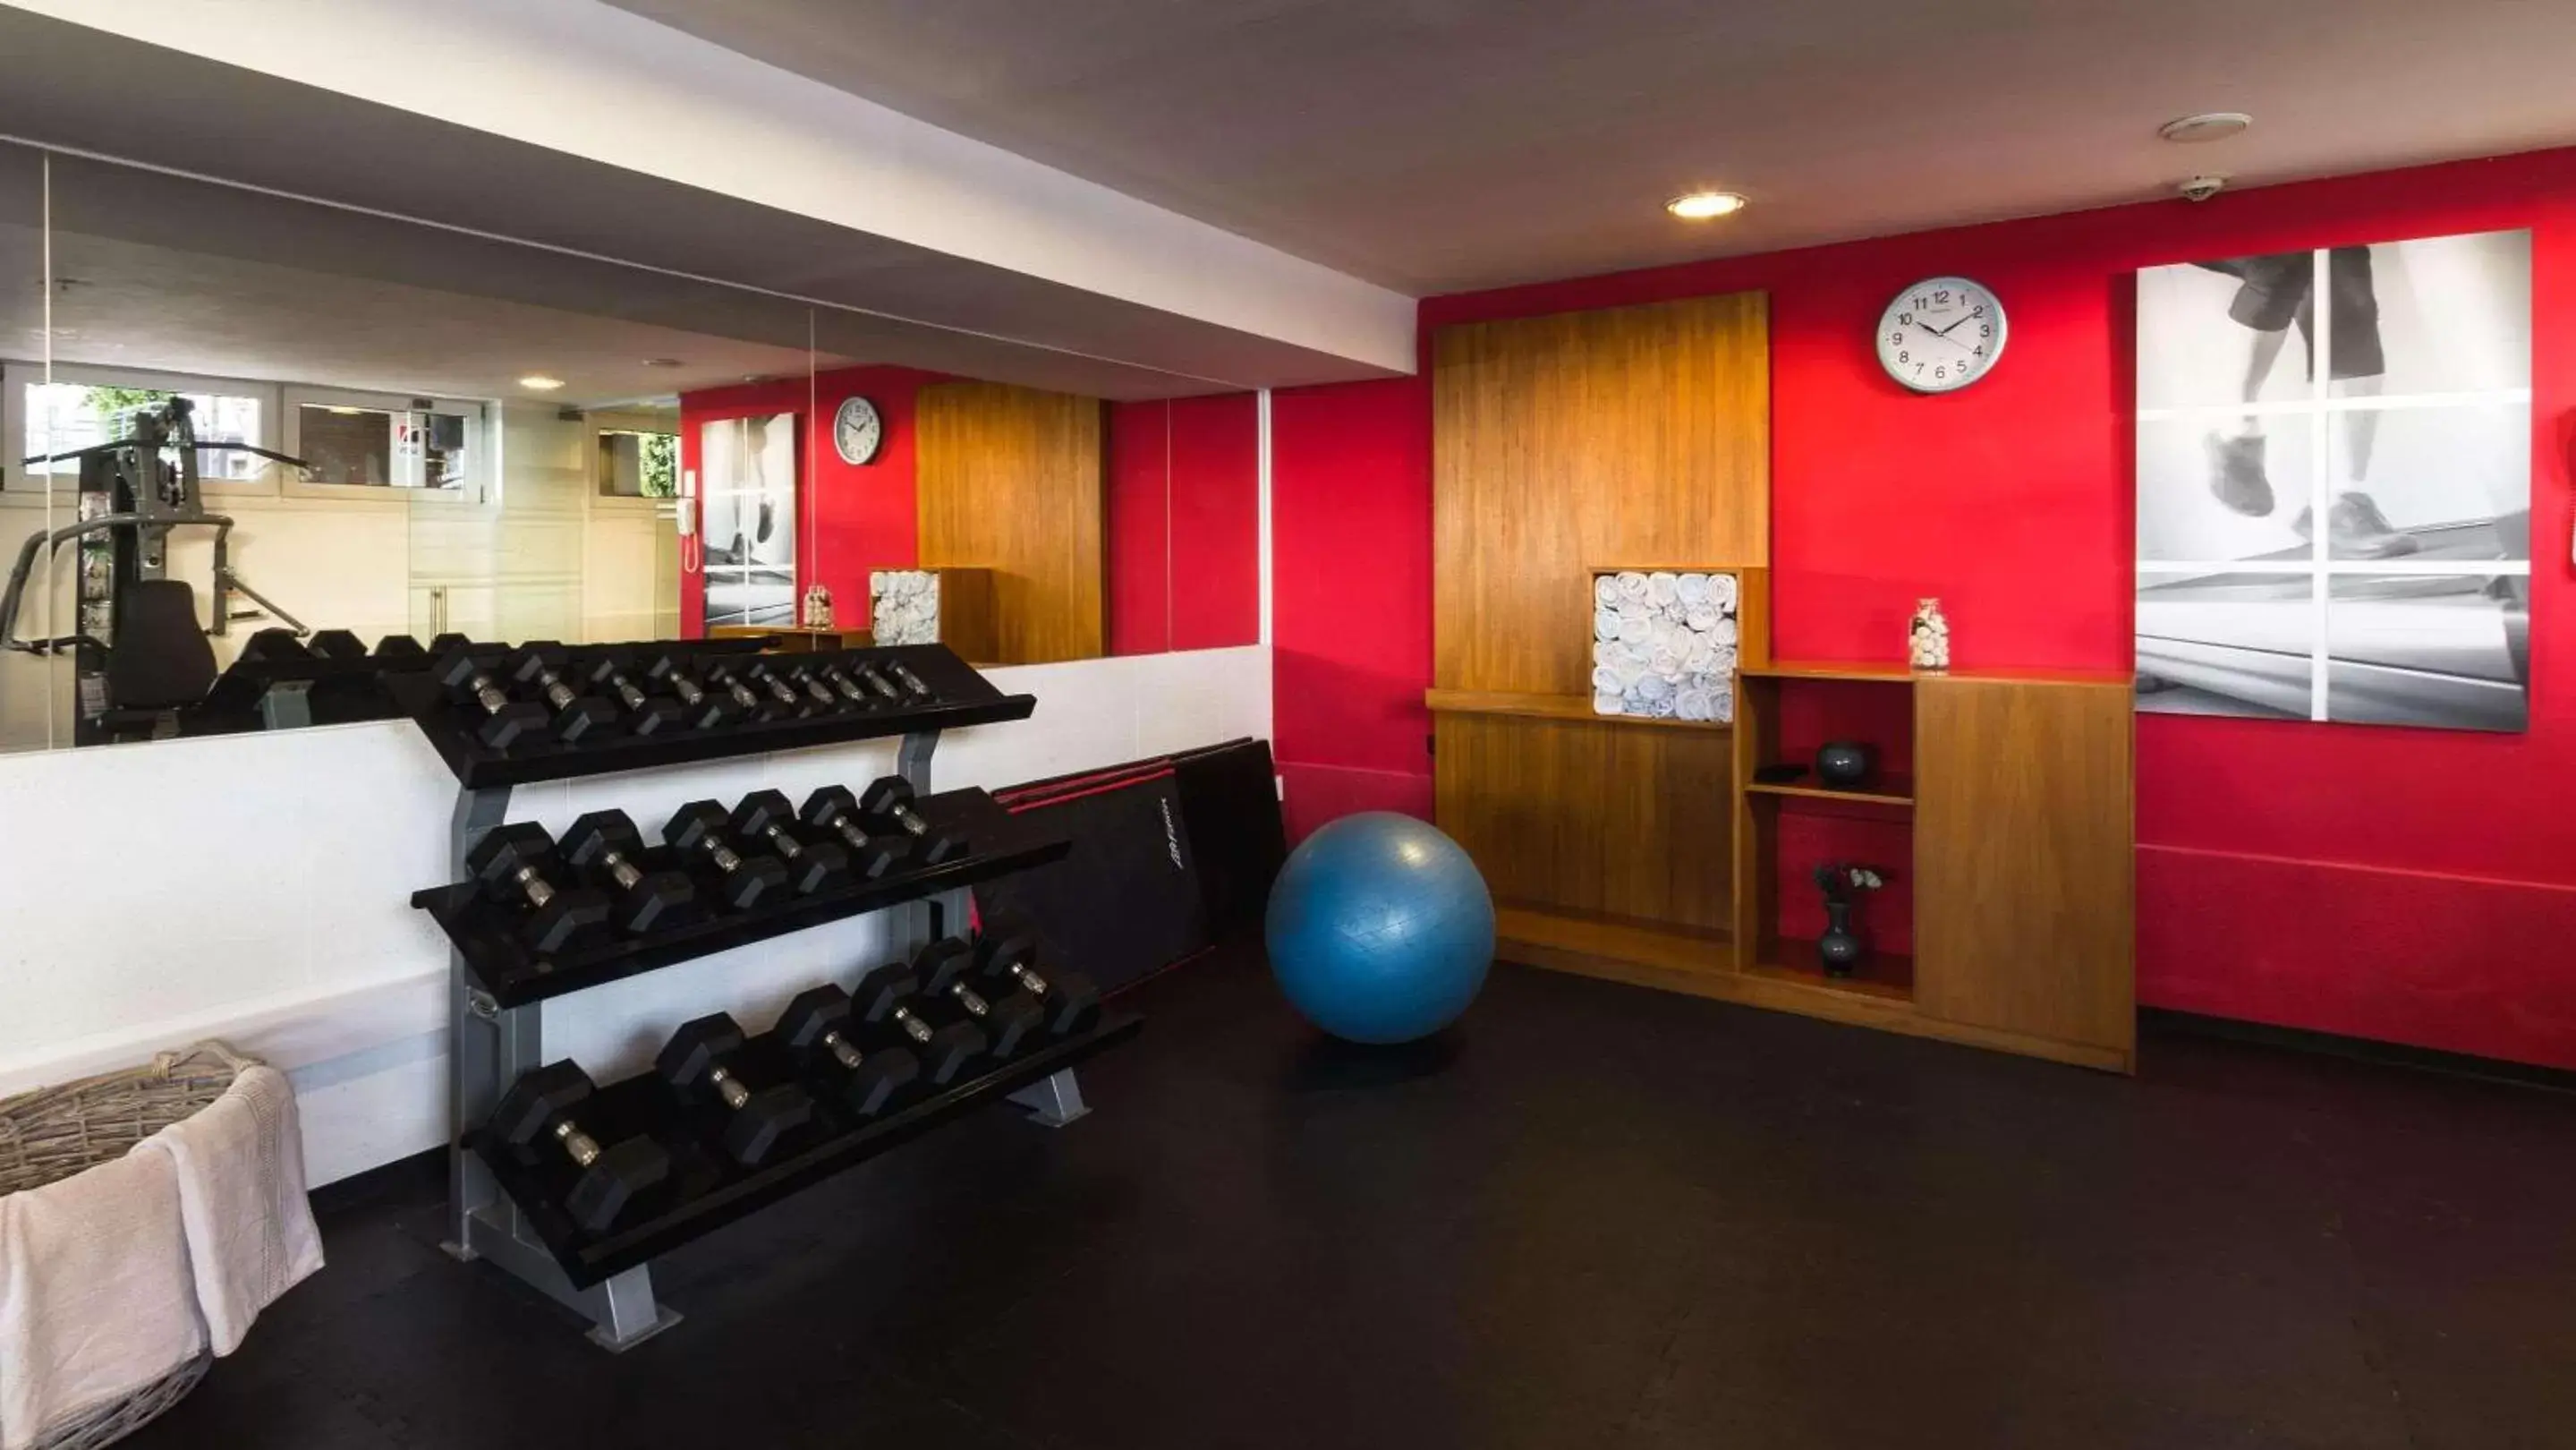 Fitness centre/facilities, Fitness Center/Facilities in Radisson Colonia Del Sacramento Hotel